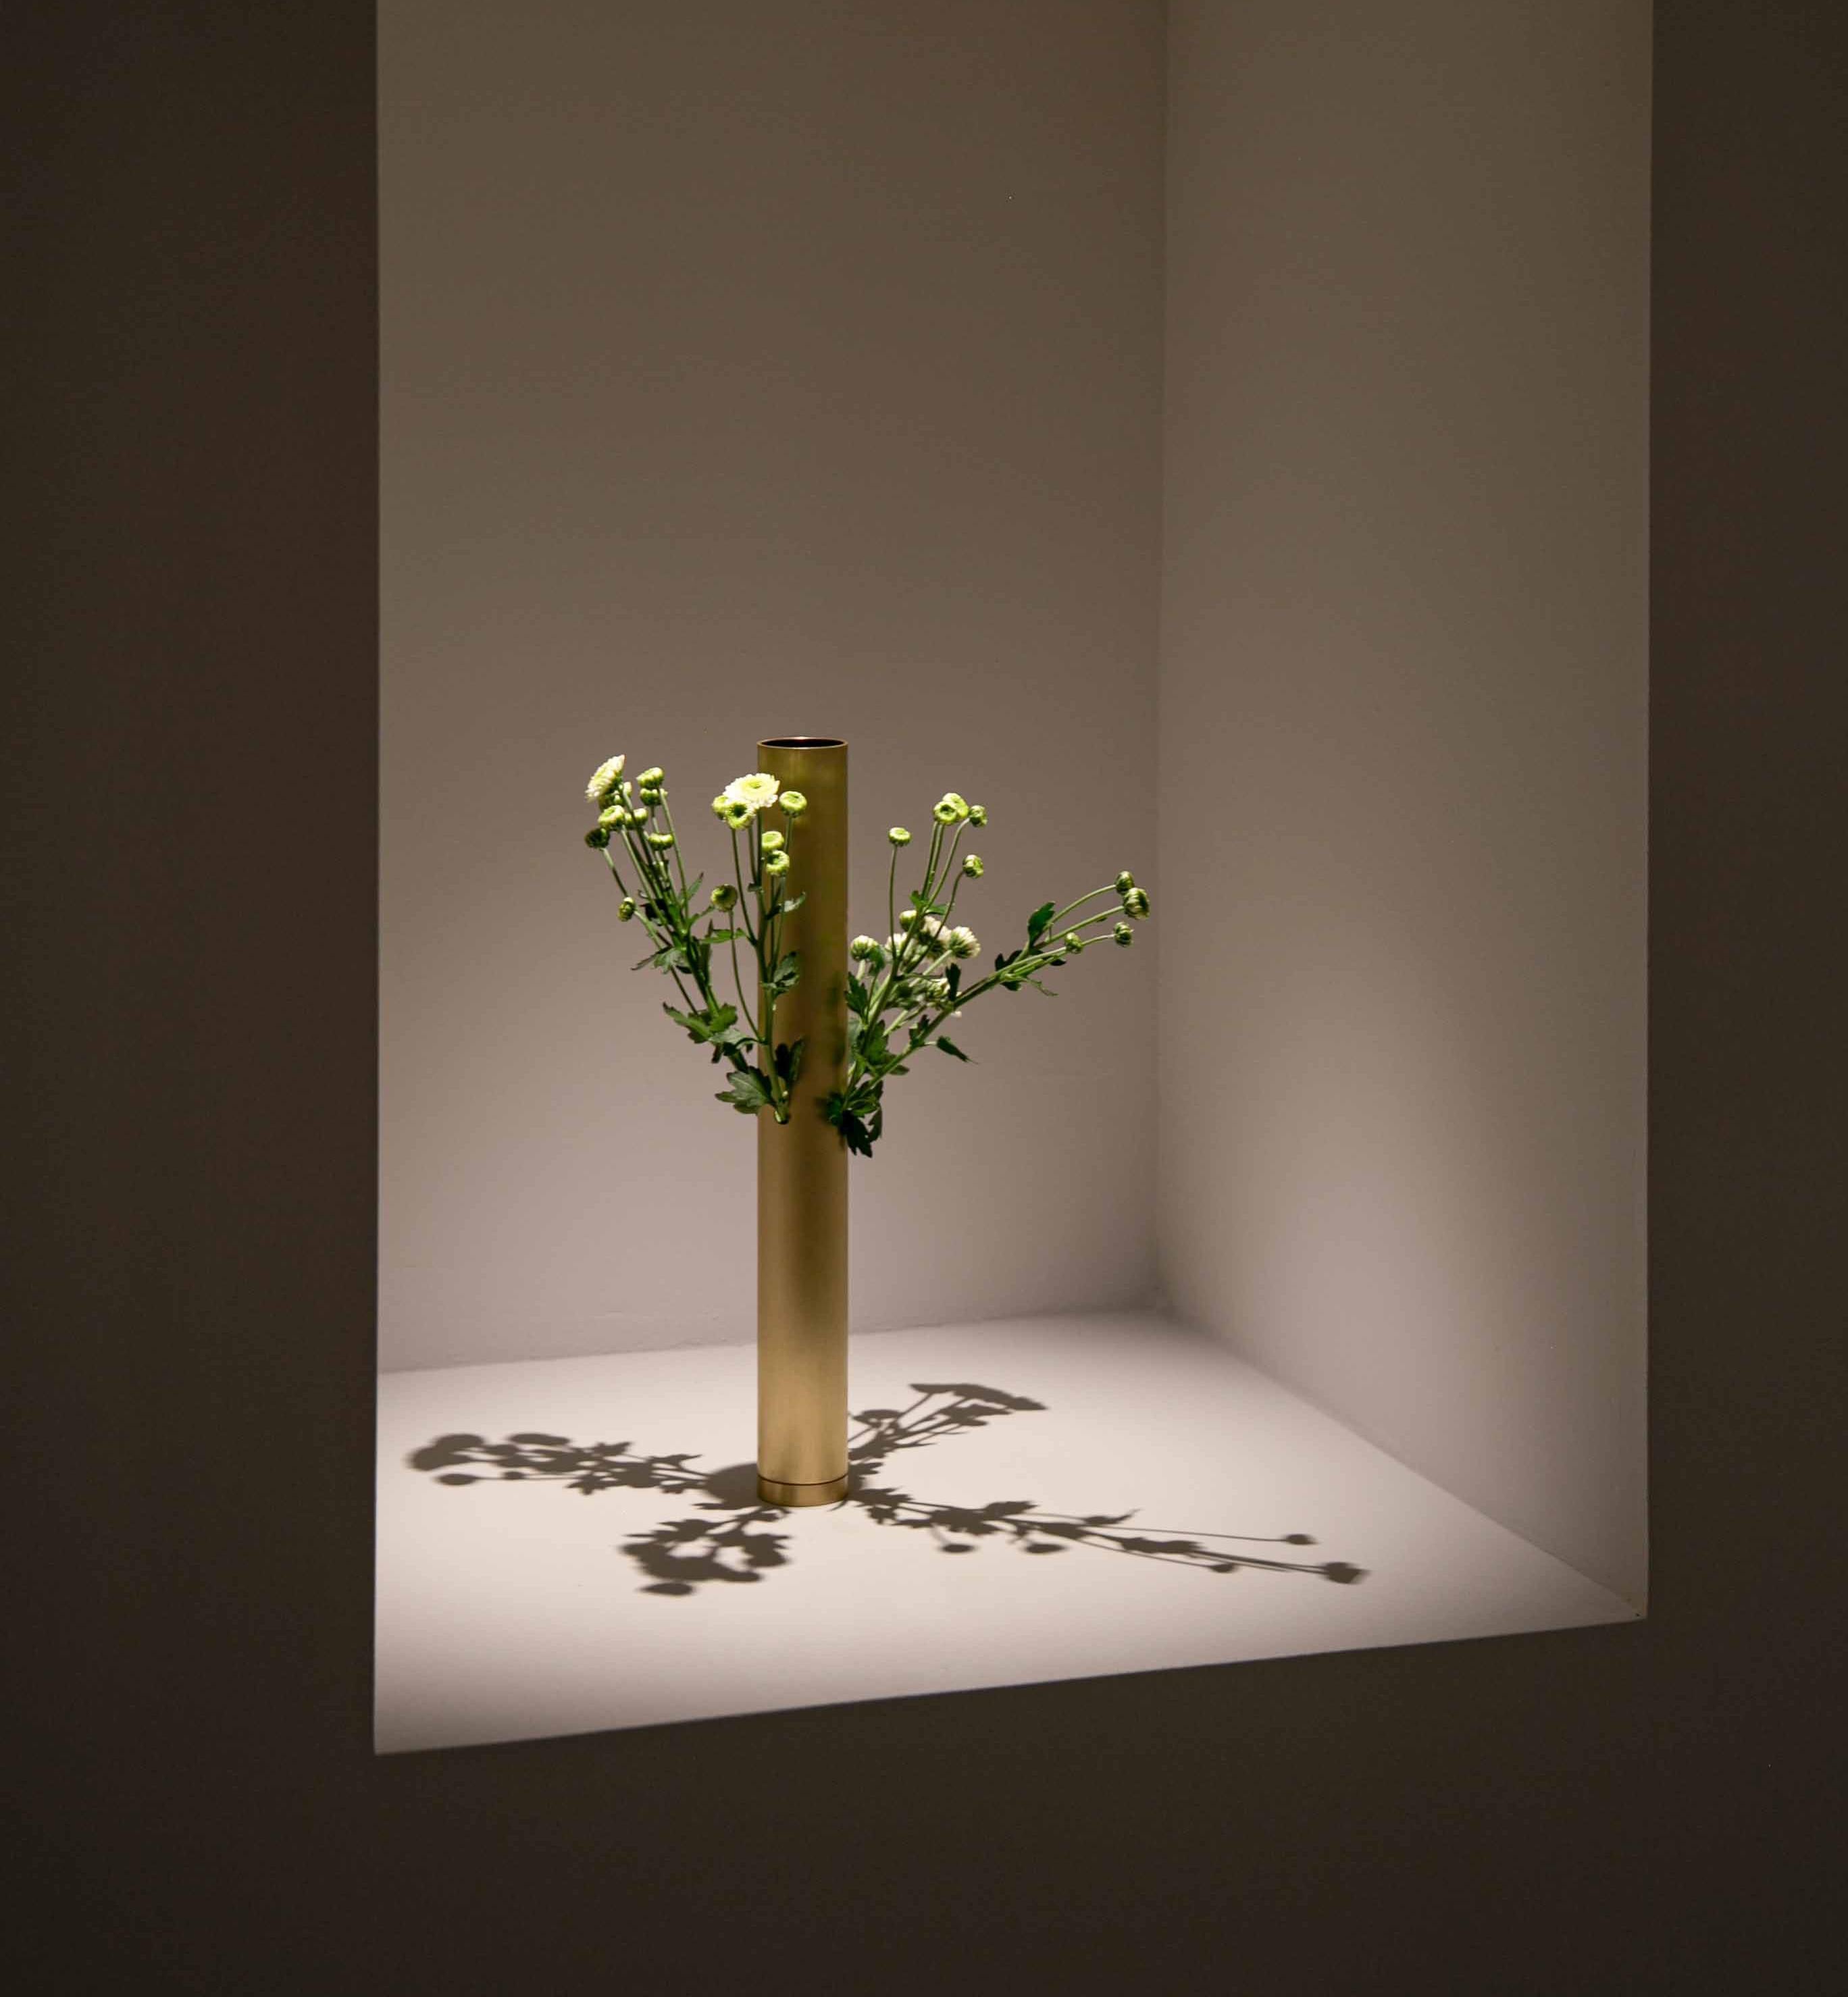 Tubito 002 est un vase en aluminium poli avec des perforations latérales qui servent d'ouvertures alternatives pour les fleurs qu'il doit contenir. Inspirée de l'art japonais de l'Ikebana et des Almorratxes espagnols, pinasaan est une série de vases